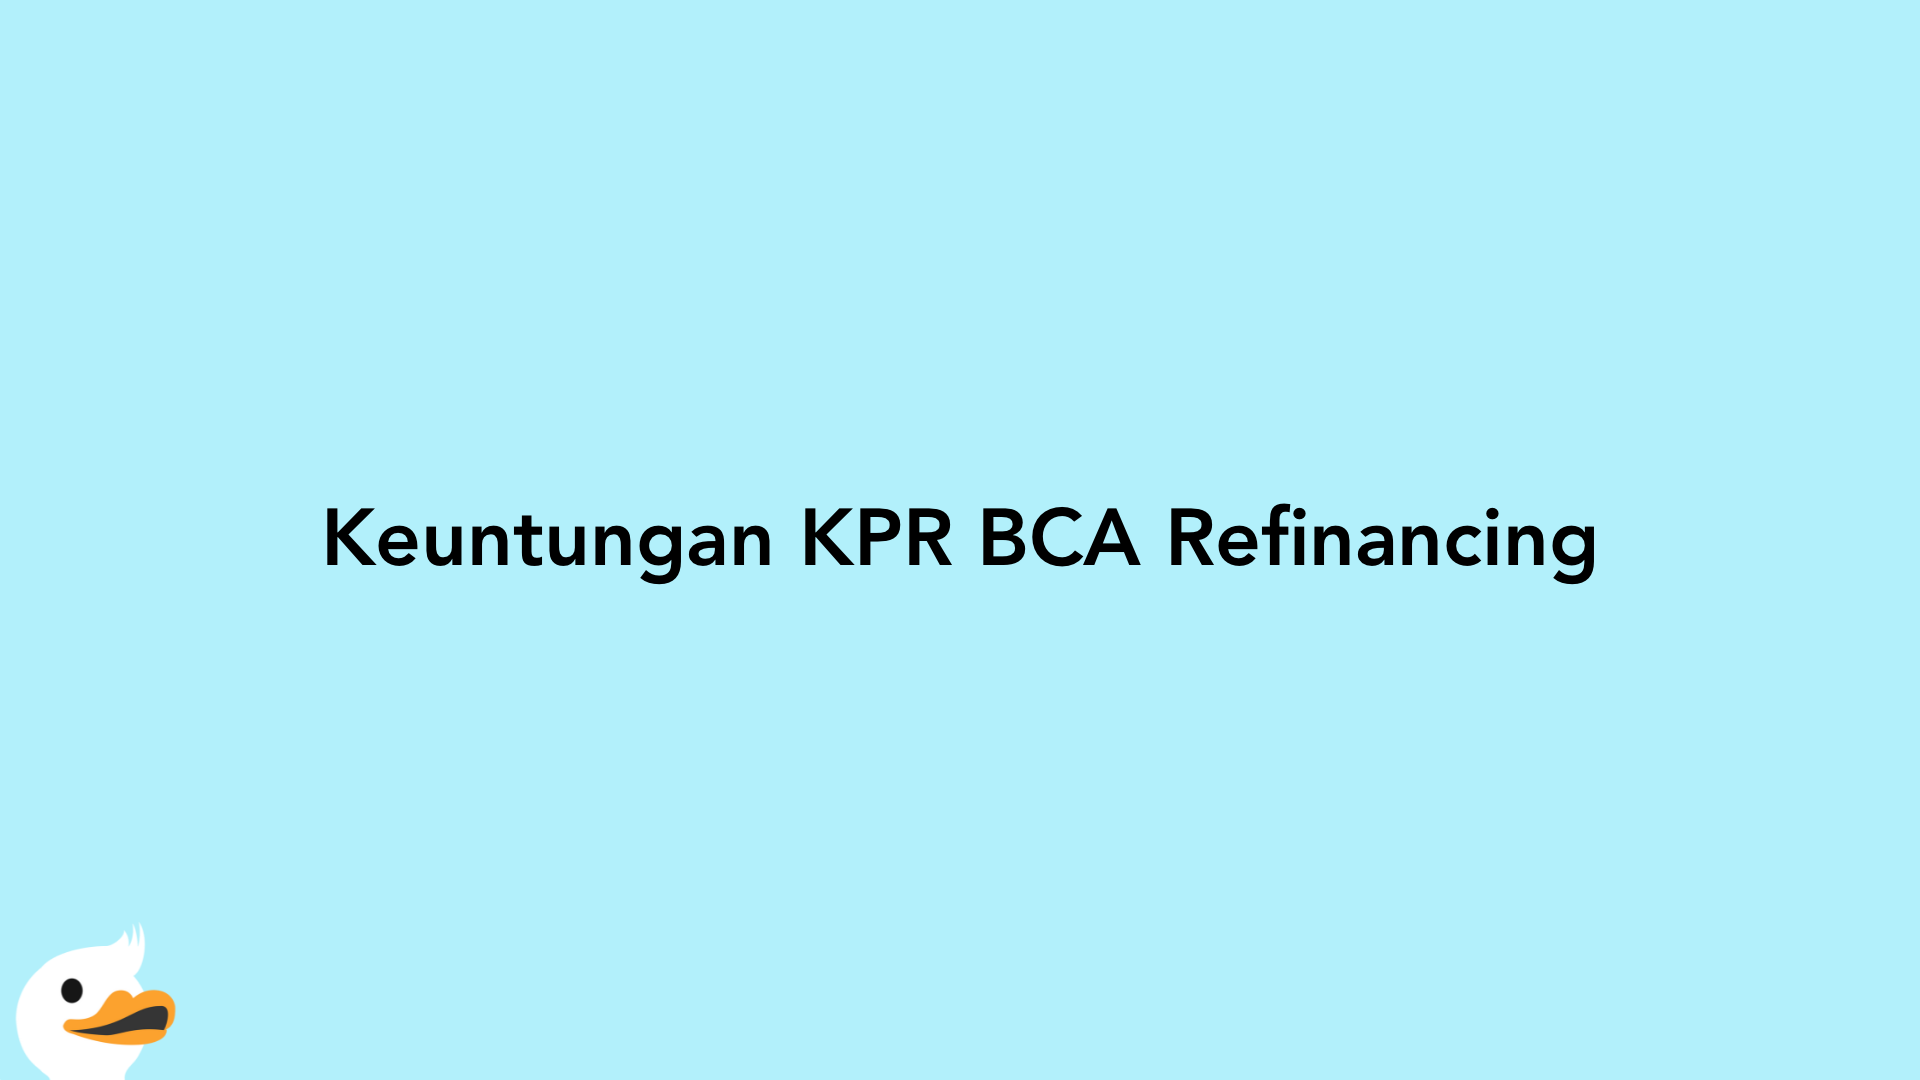 Keuntungan KPR BCA Refinancing